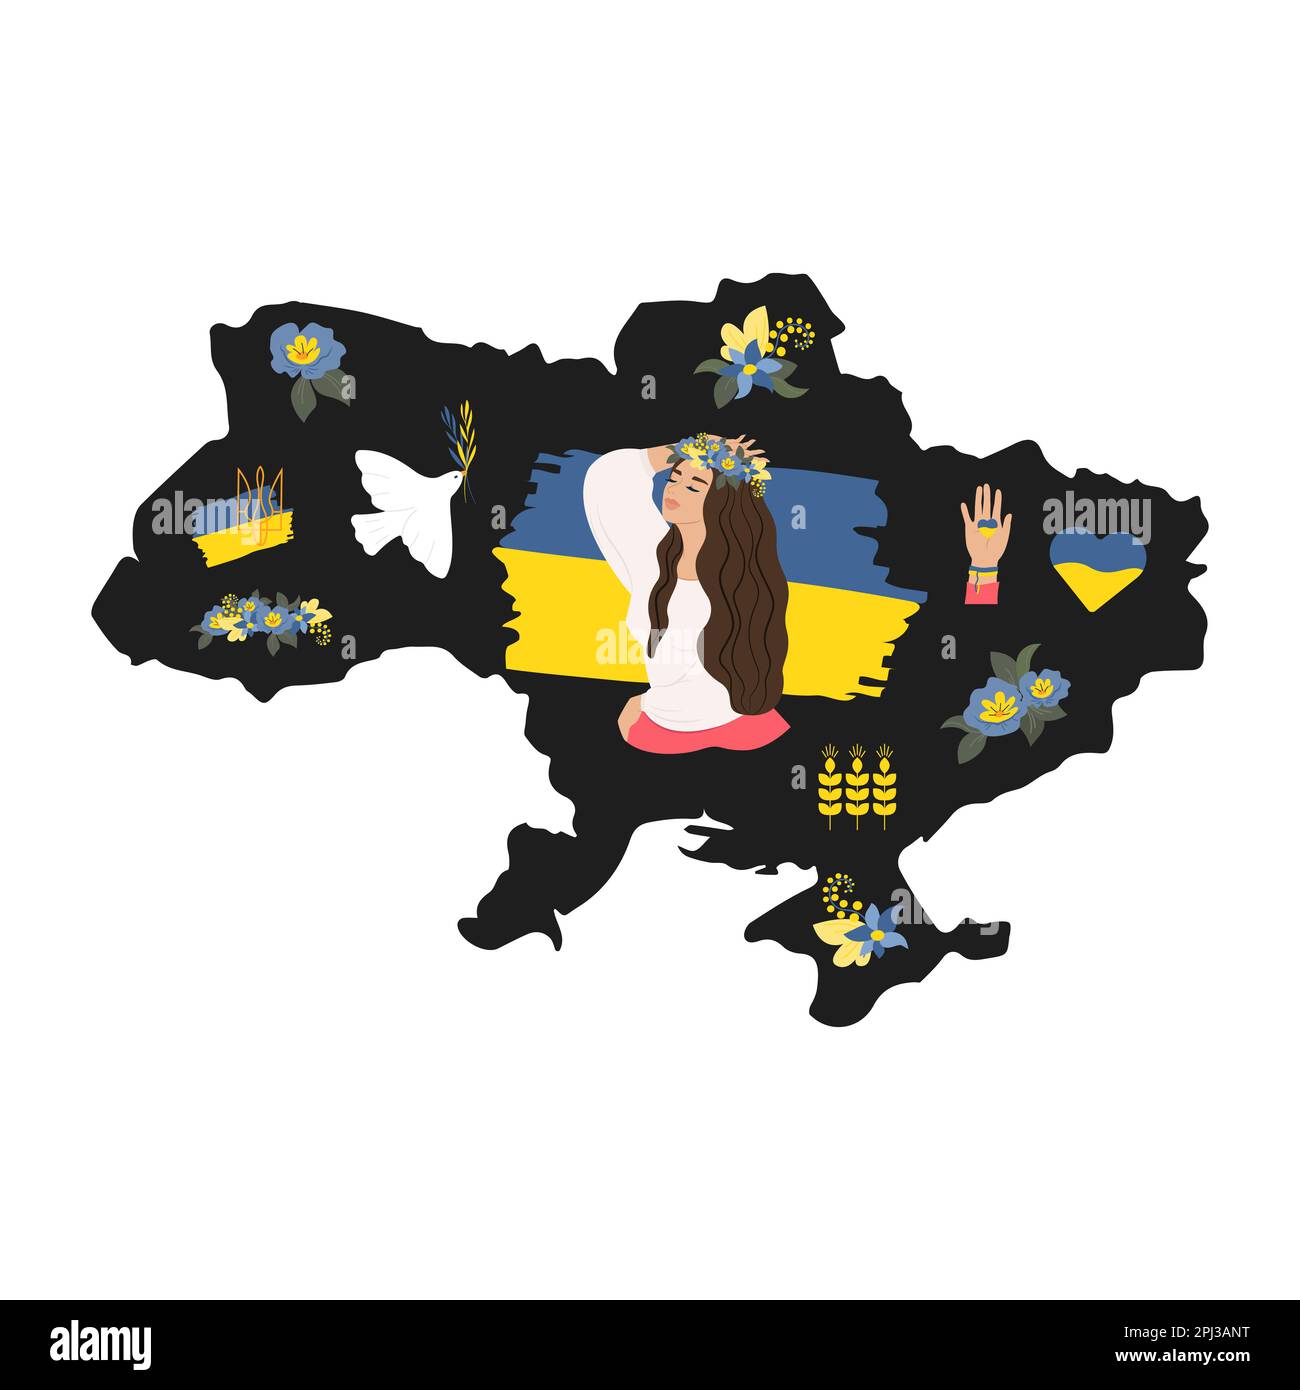 Ukrainisch, schwarze Silhouette des Territoriums der Ukraine, Symbole Taube des Friedens, Mädchen im Kranz, Weizenohren, Wappen der Ukraine. Vektor Stock Vektor